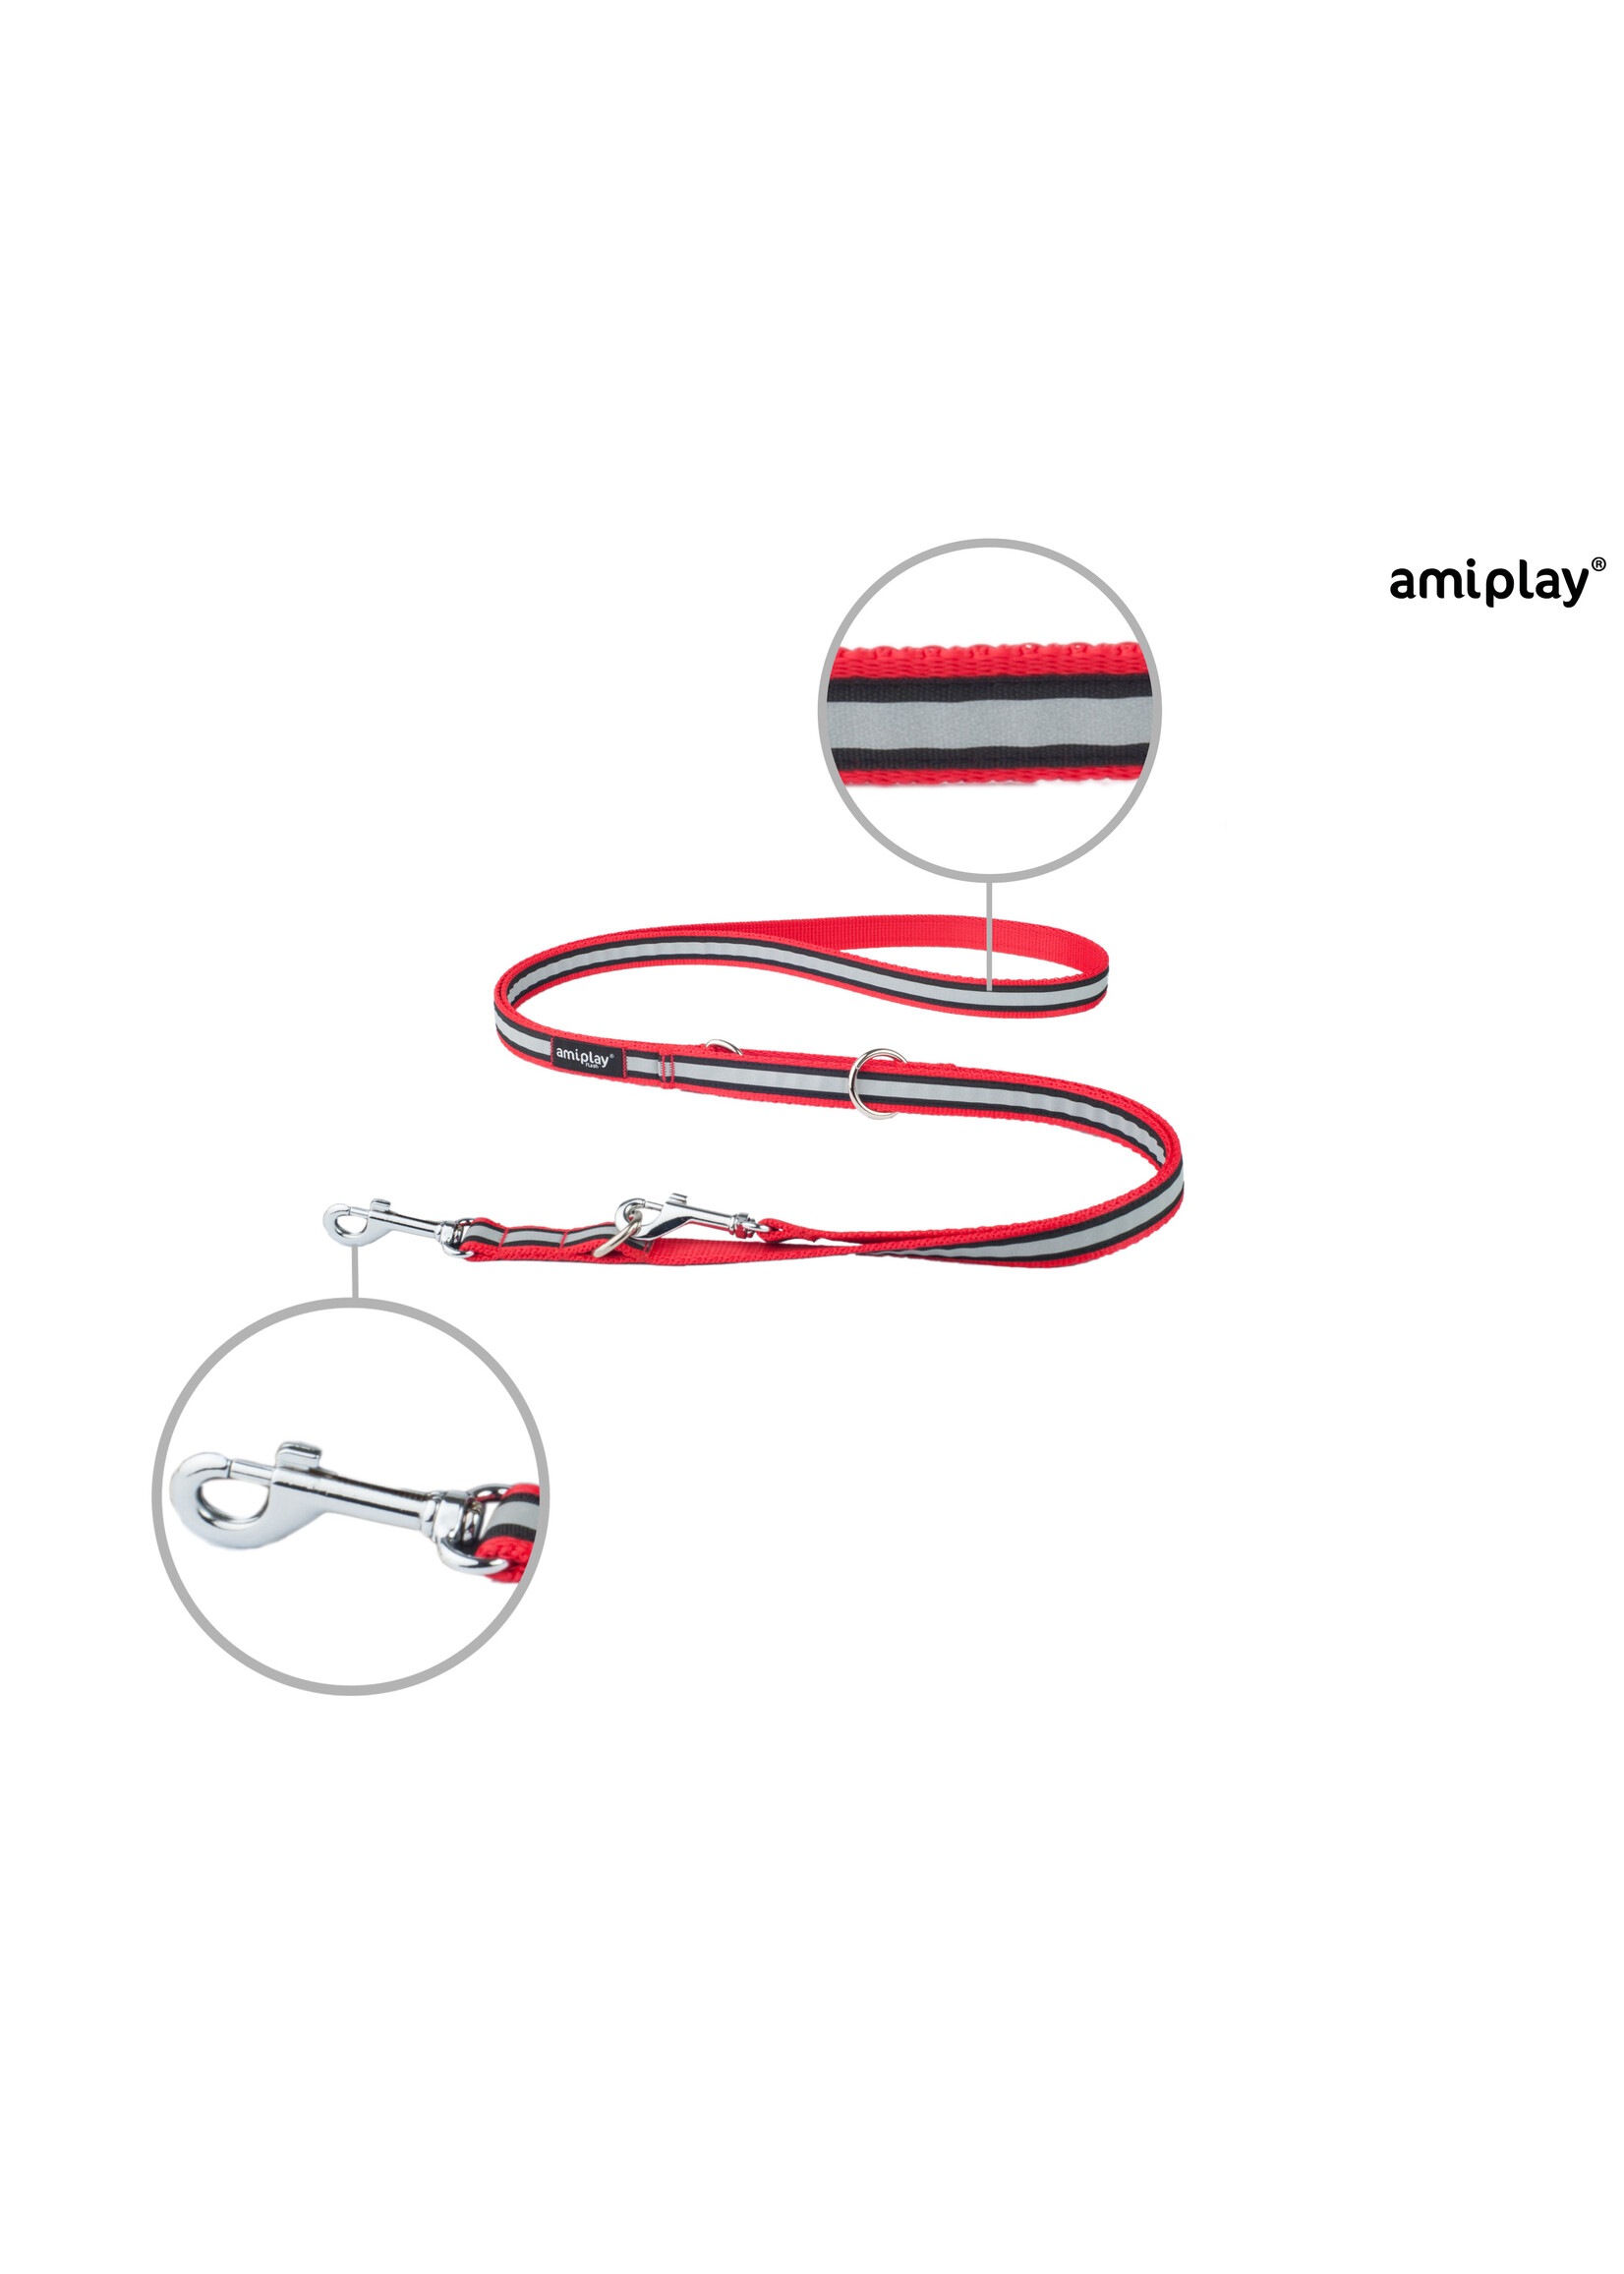 Amiplay Leiband verstelbaar 6in1 Shine rood maat-XL / 100-200x2,5cm